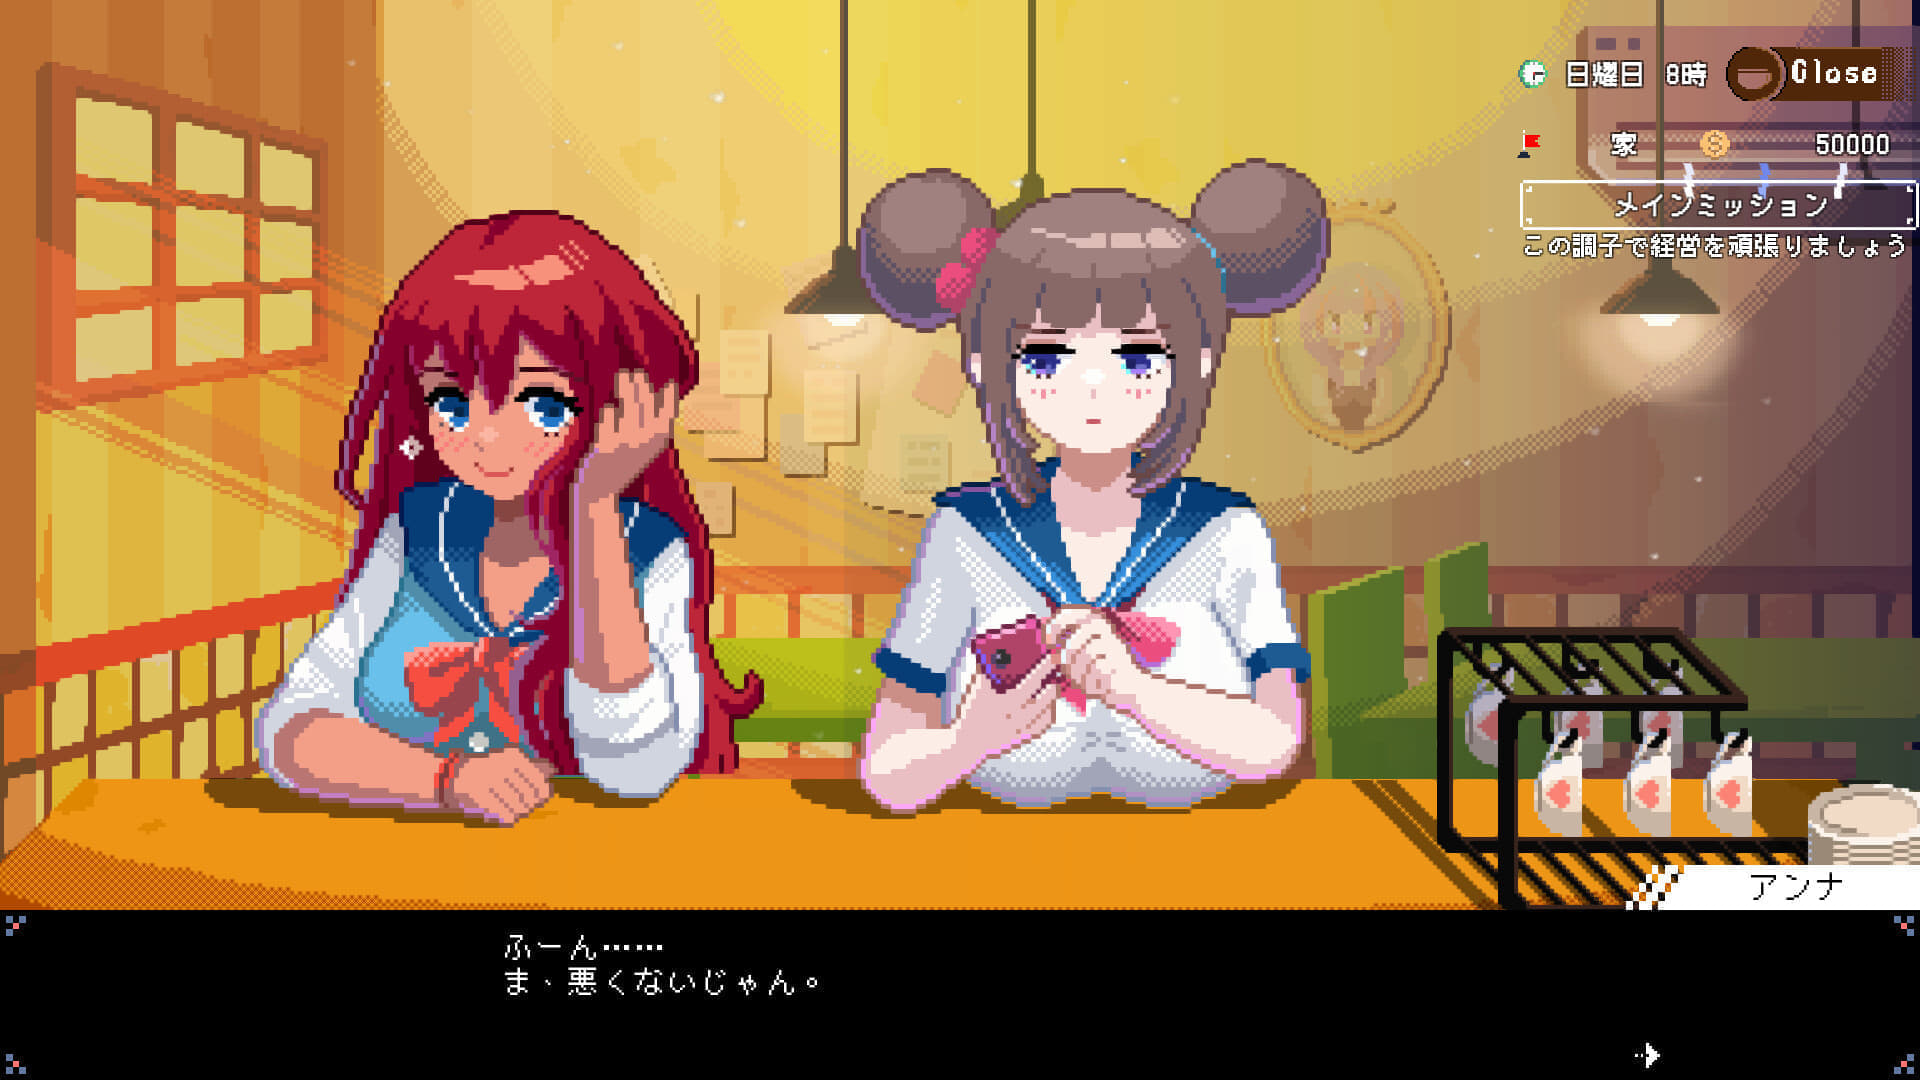 『電気街の喫茶店』が2024年夏ごろに発売決定。日本橋でメイド喫茶を経営するシミュレーションゲーム
_001